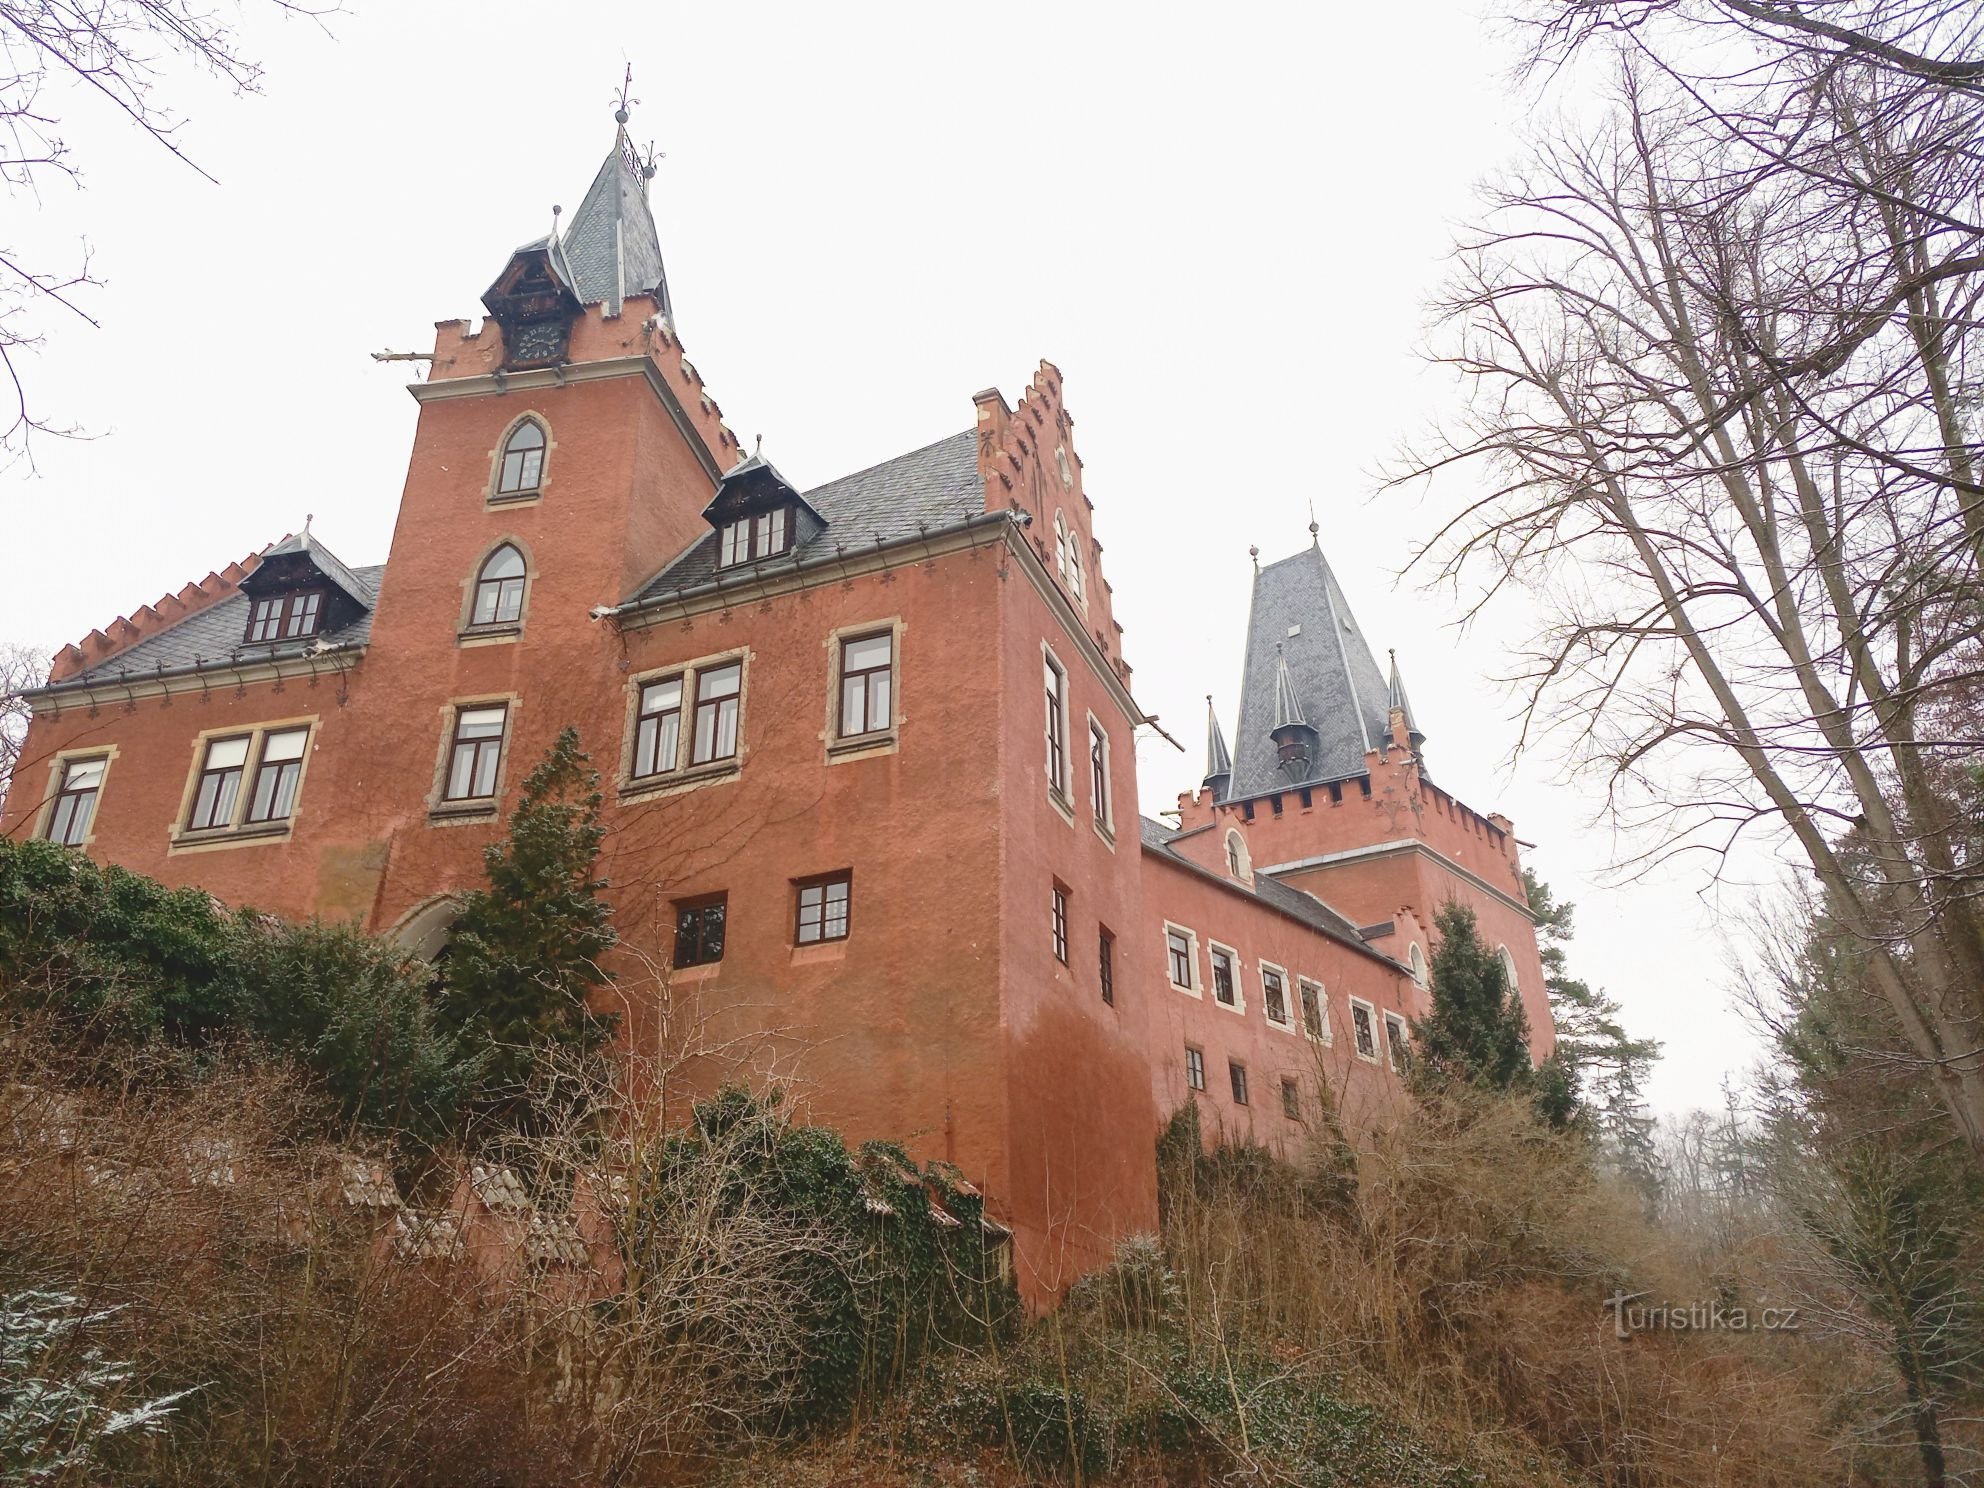 3. Замок Червены Градек, возможно, был назван в честь покрытия или цвета штукатурки.